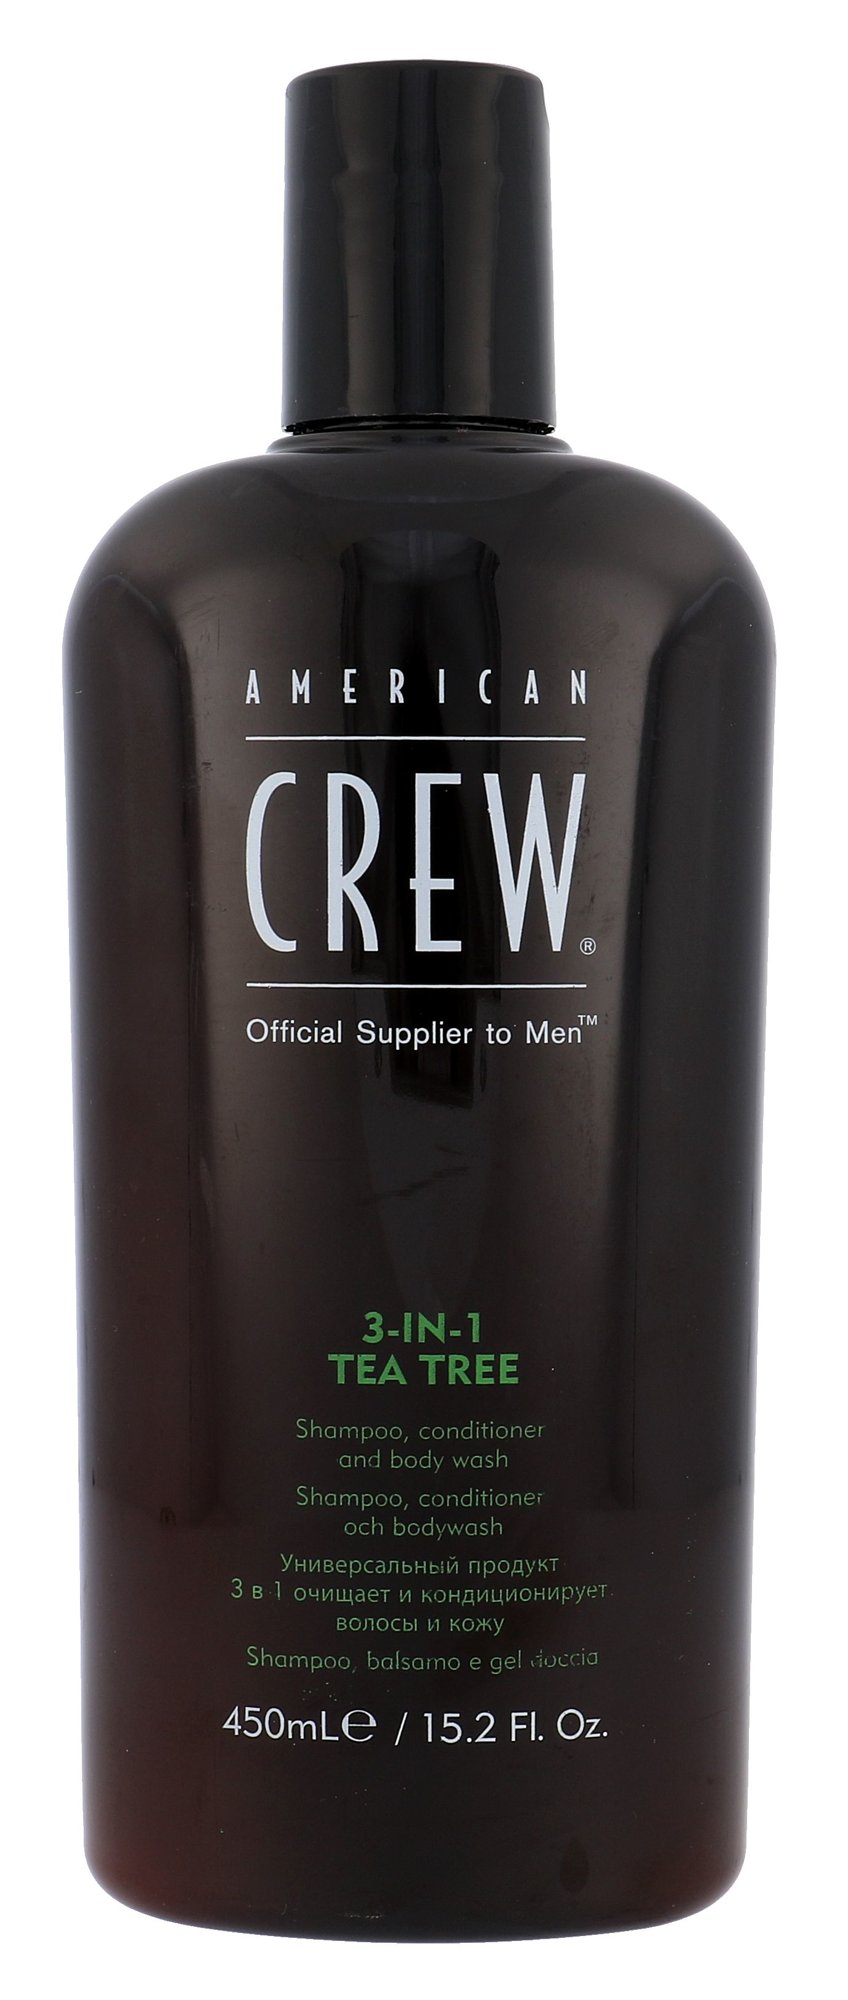 American Crew 3-IN-1 Shampoo, Conditioner & Body Wash šampūnas